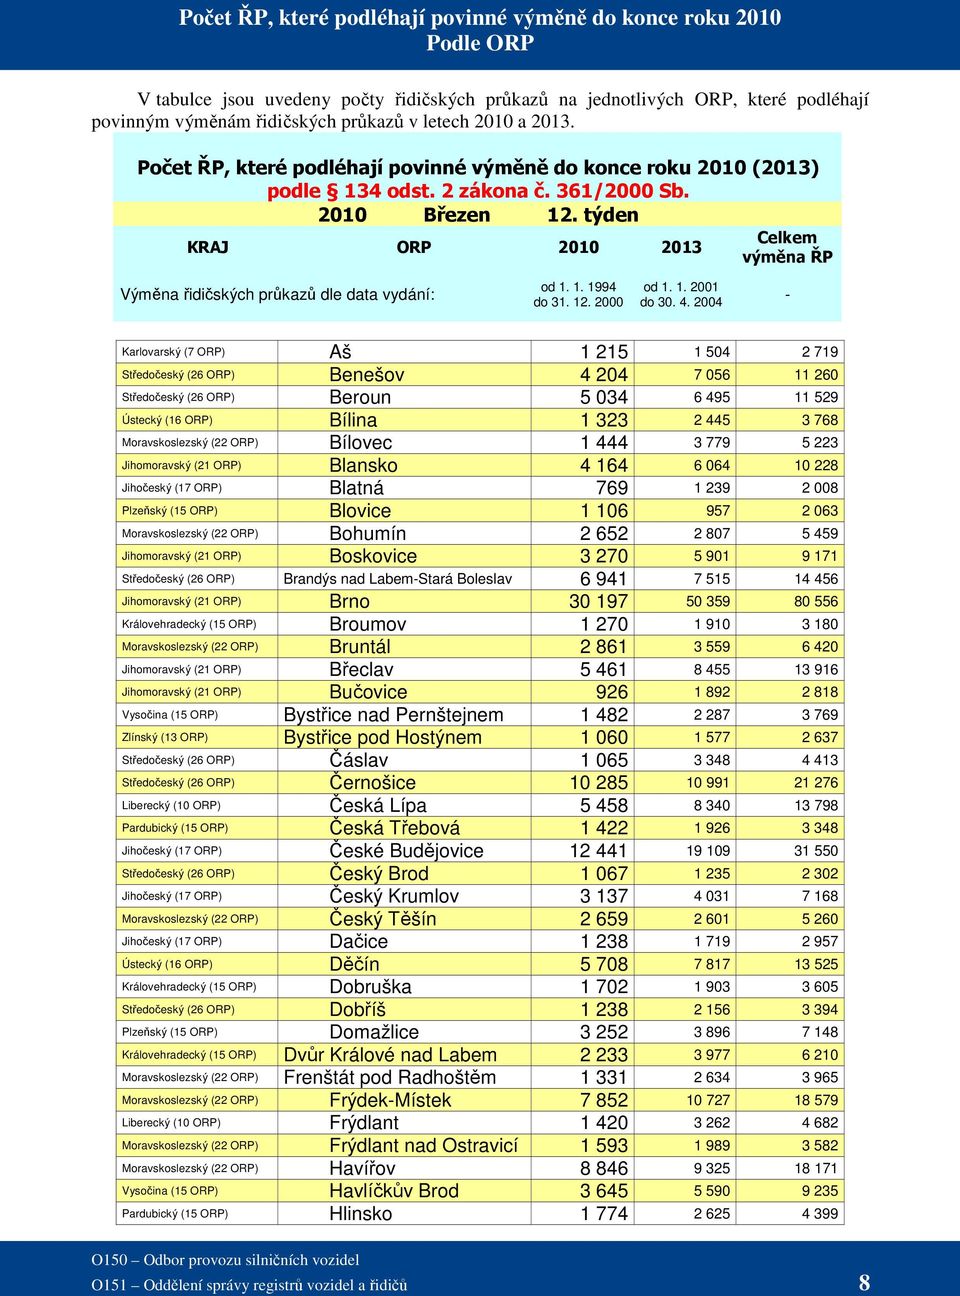 týden KRAJ ORP 2010 2013 Celkem výměna ŘP Výměna řidičských průkazů dle data vydání: od 1. 1. 1994 do 31. 12. 2000 od 1. 1. 2001 do 30. 4.